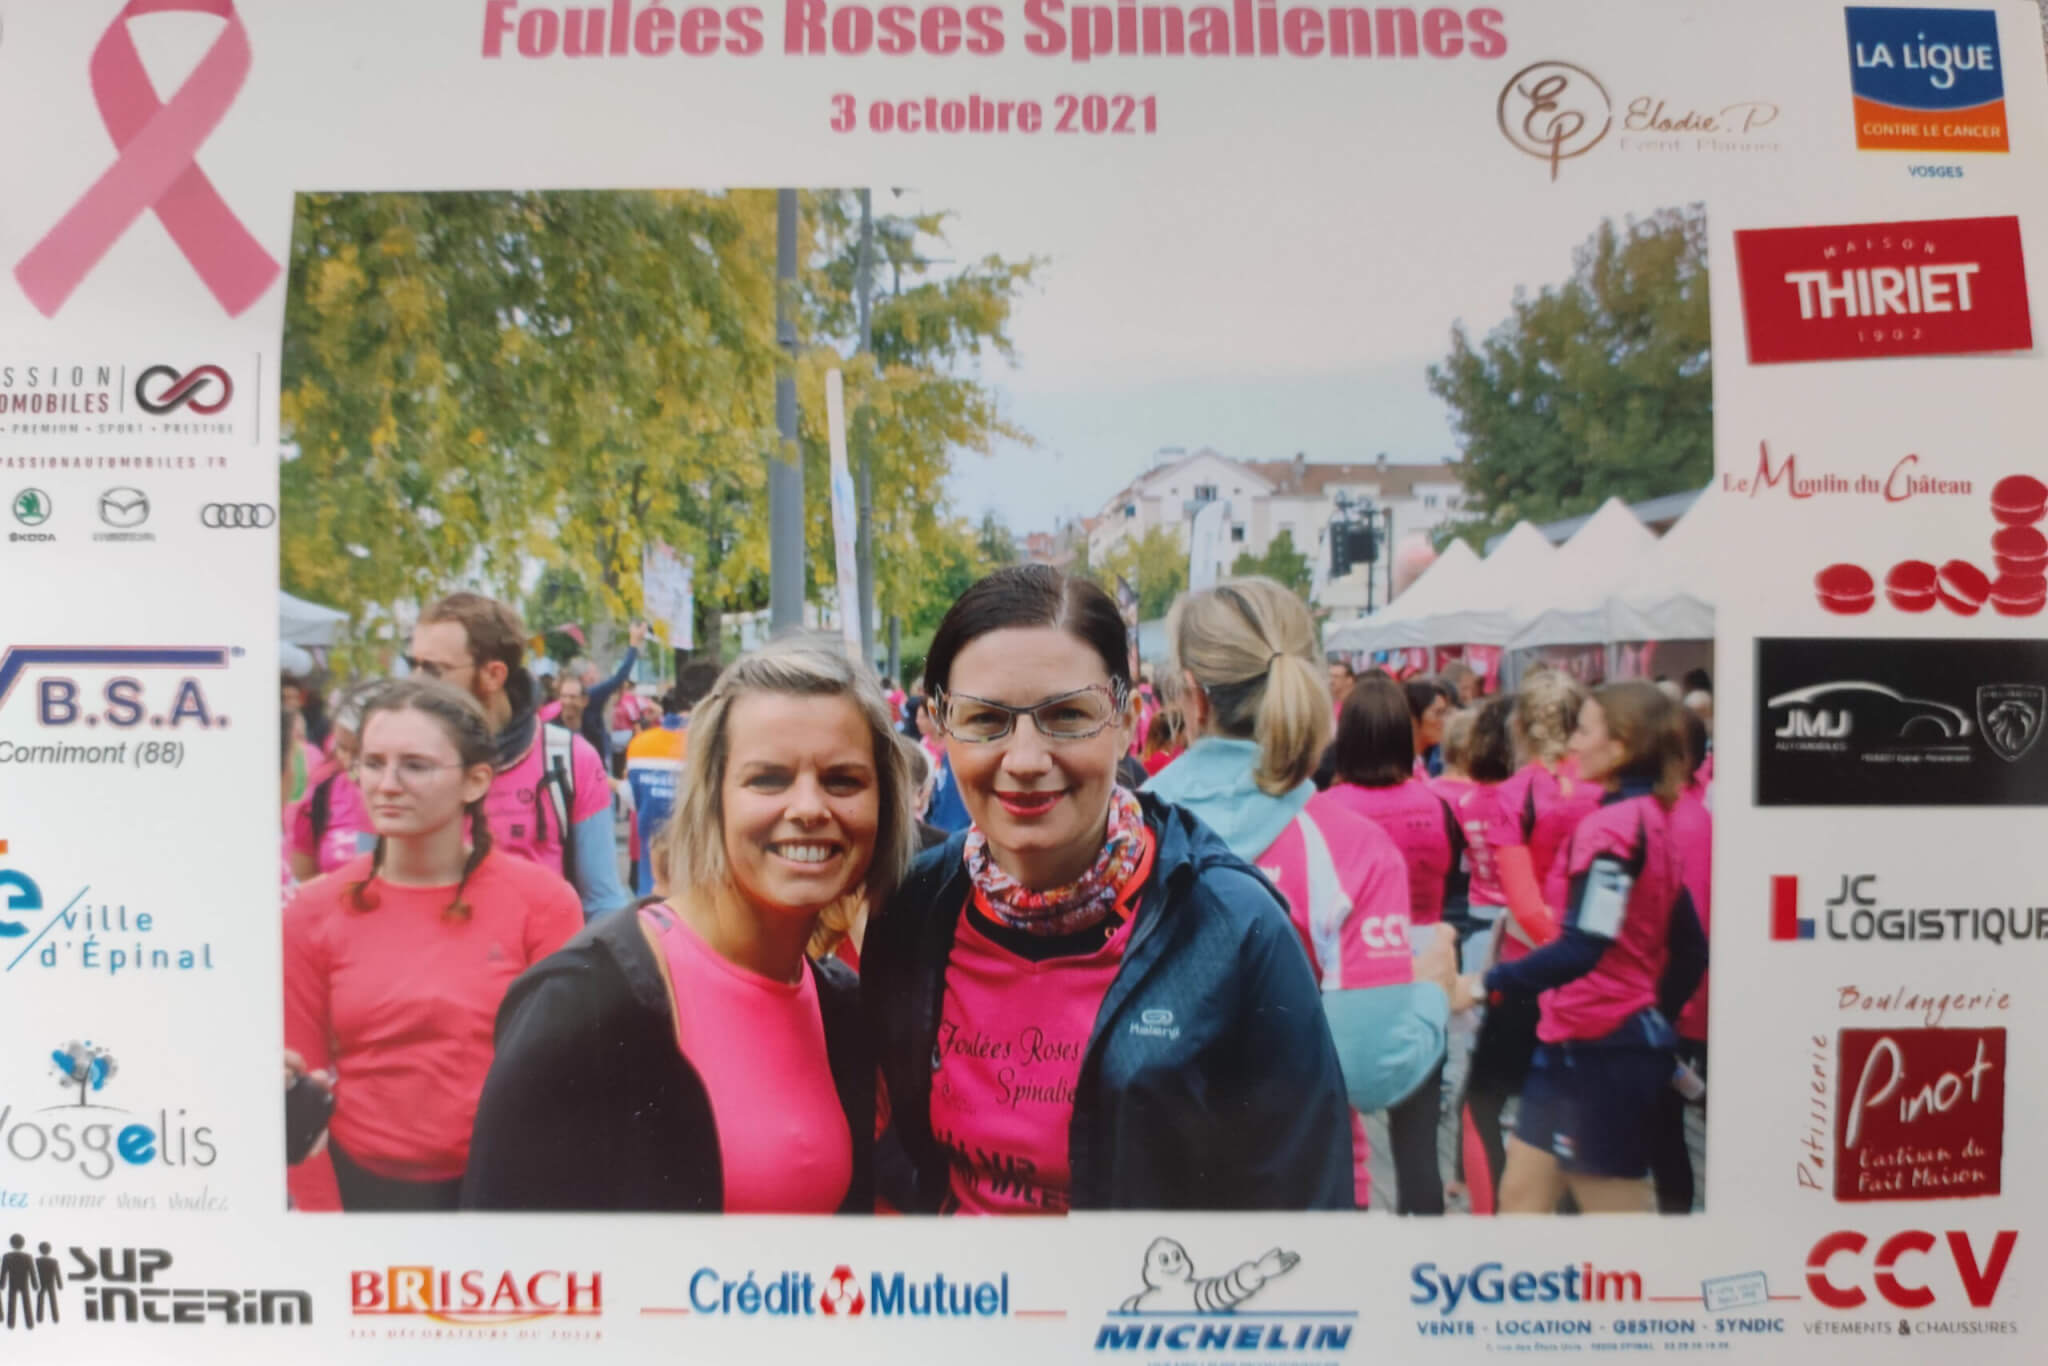 FMS foulees roses - octobre 2021 ligue contre le cancer